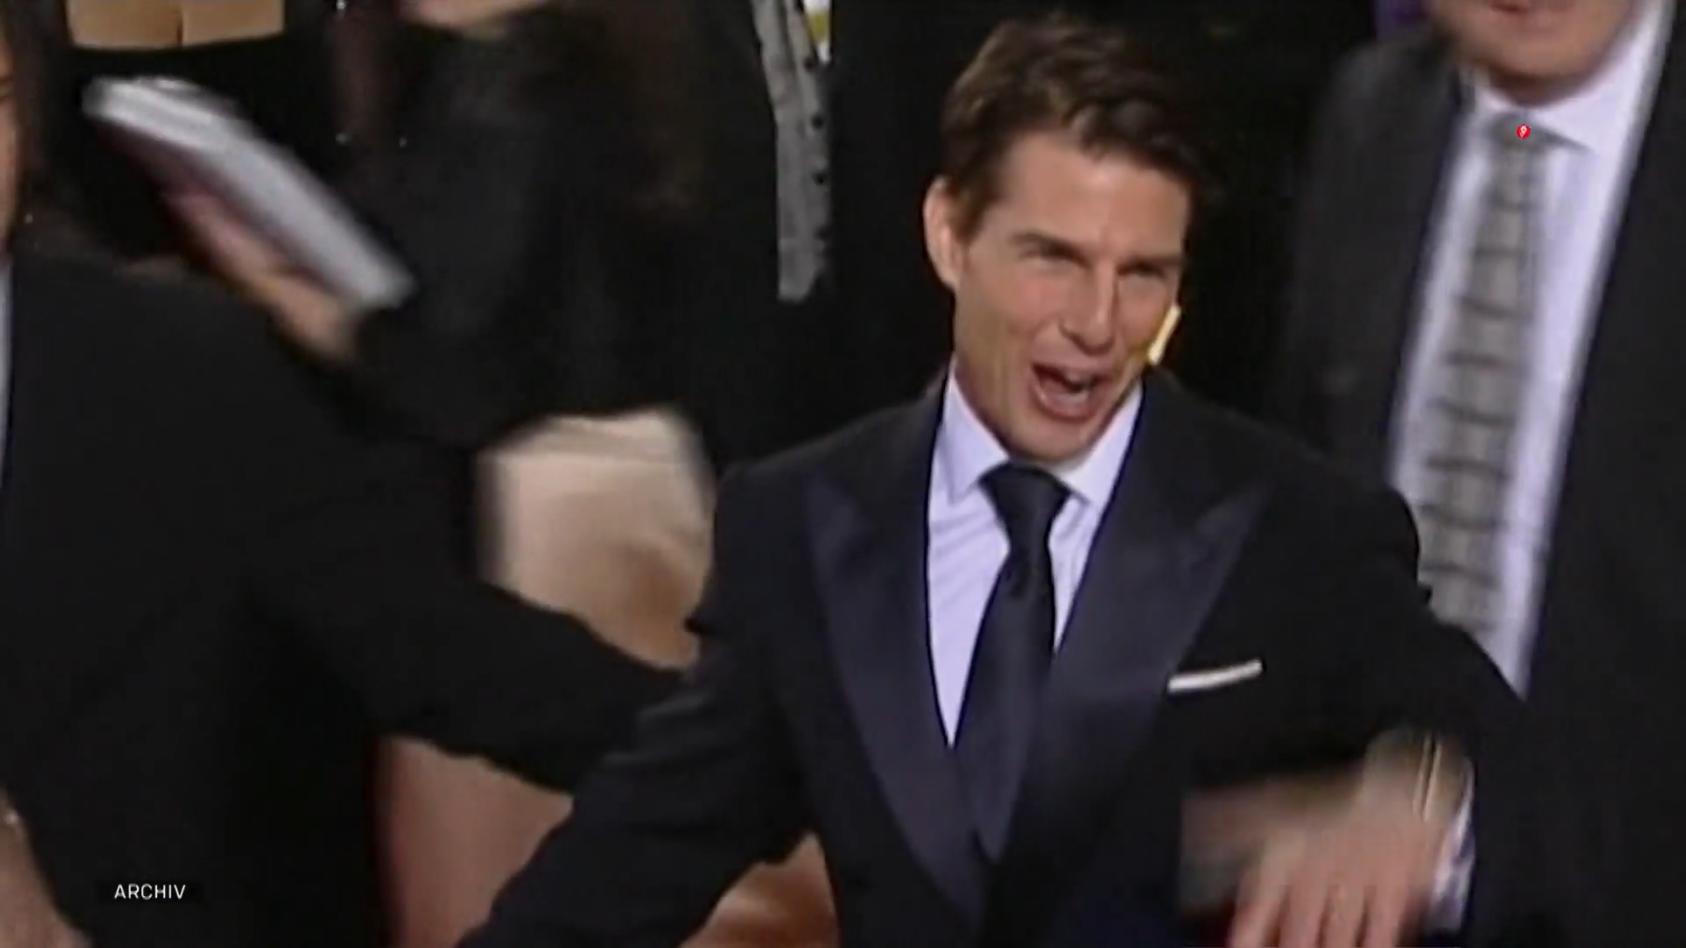 Starttermine von Tom Cruise Filmen erneut verschoben "Top Gun" und "Mission: Impossible"